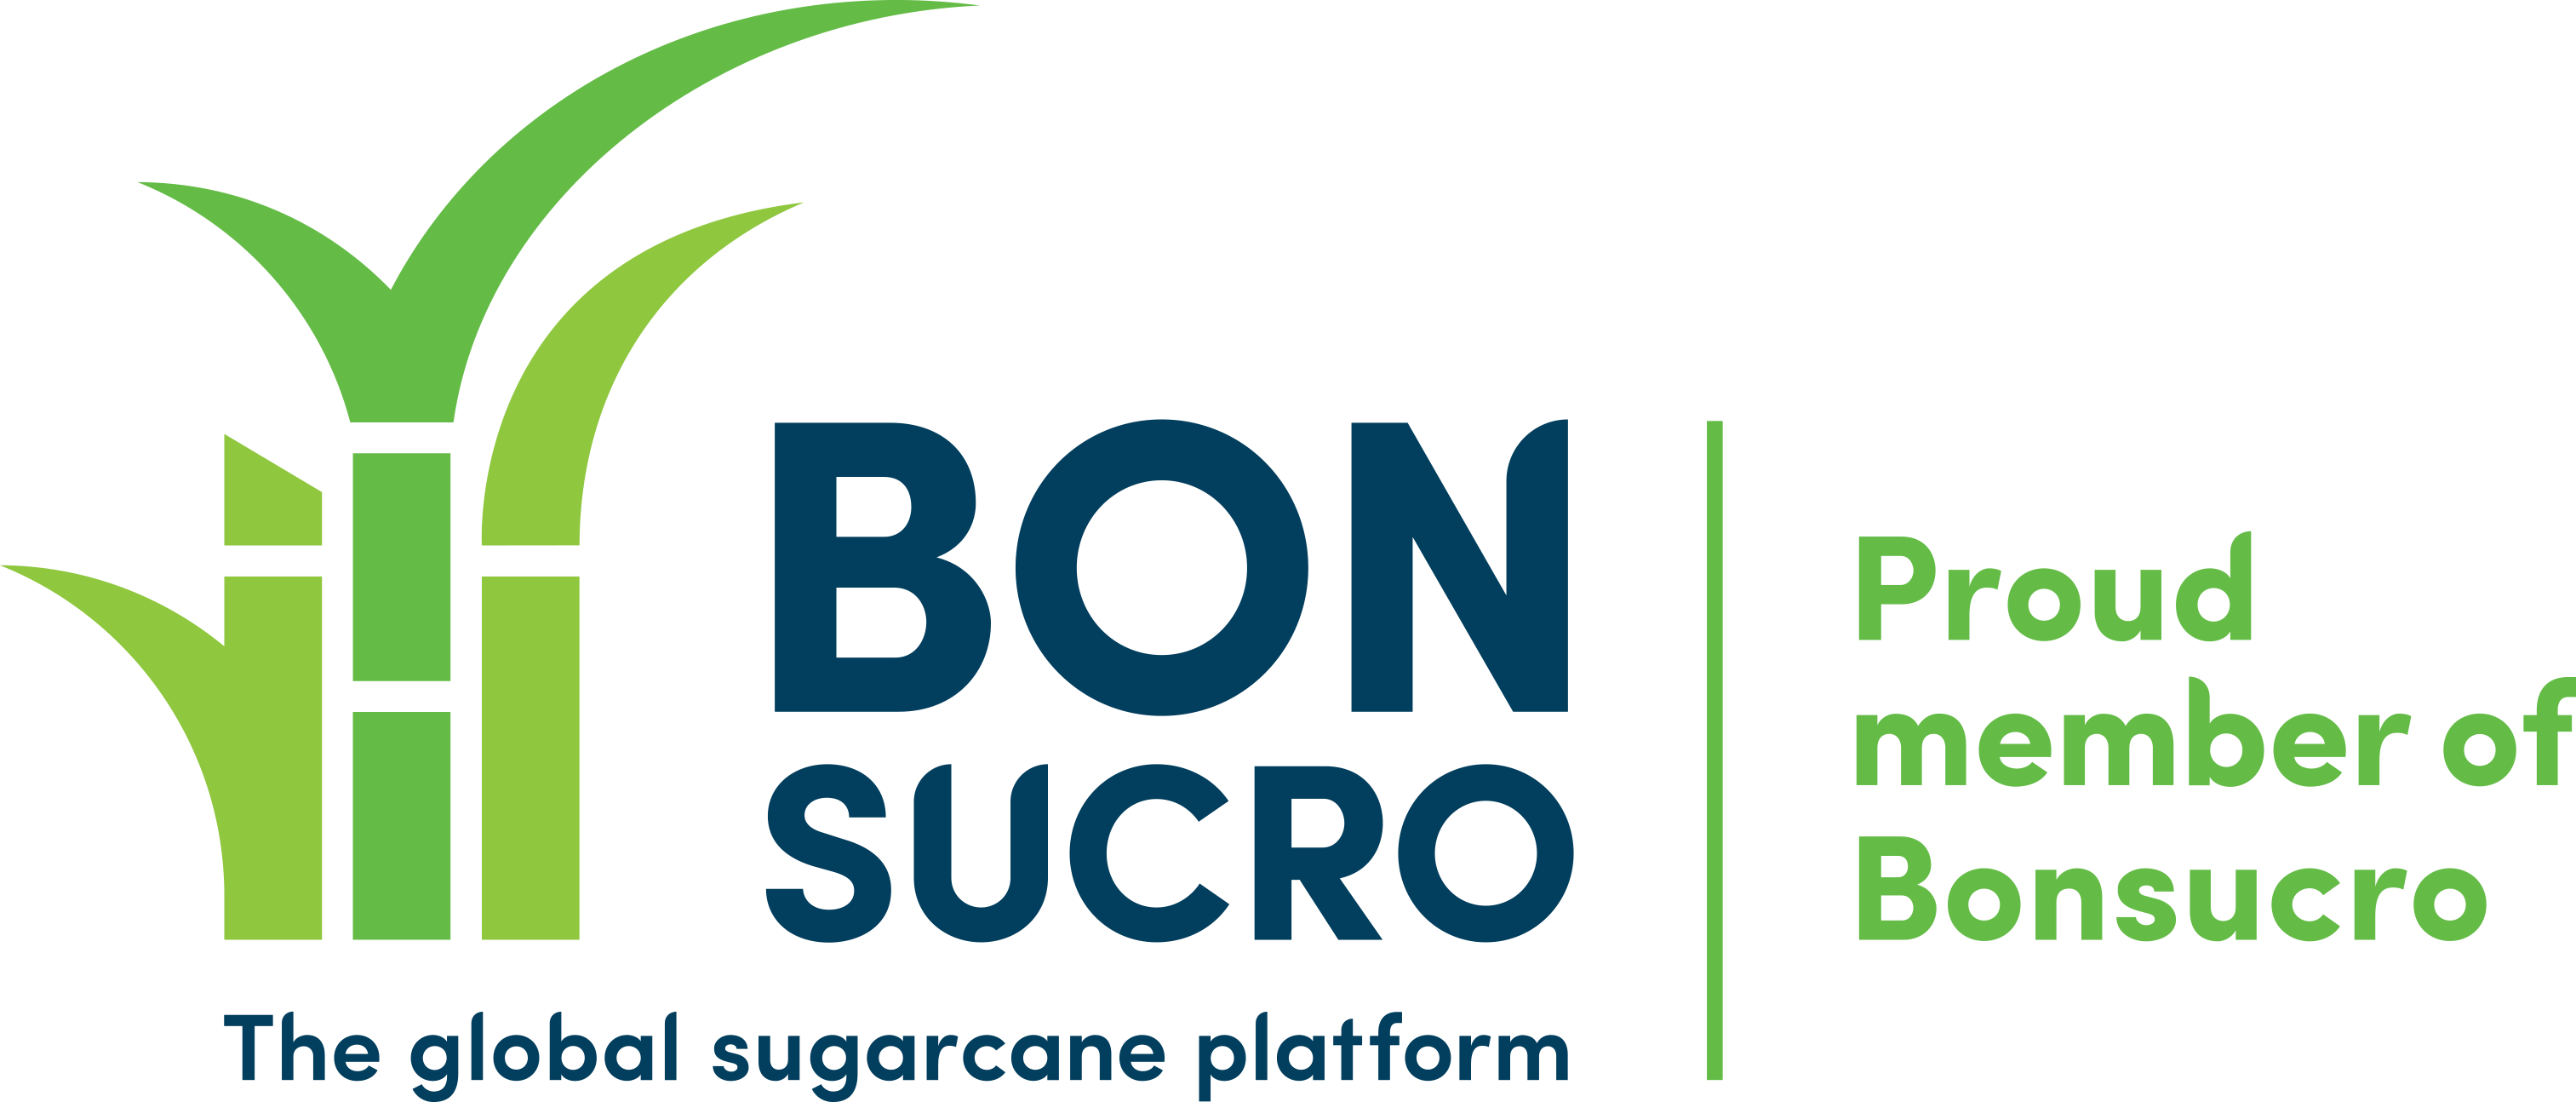 BonSucro_membership